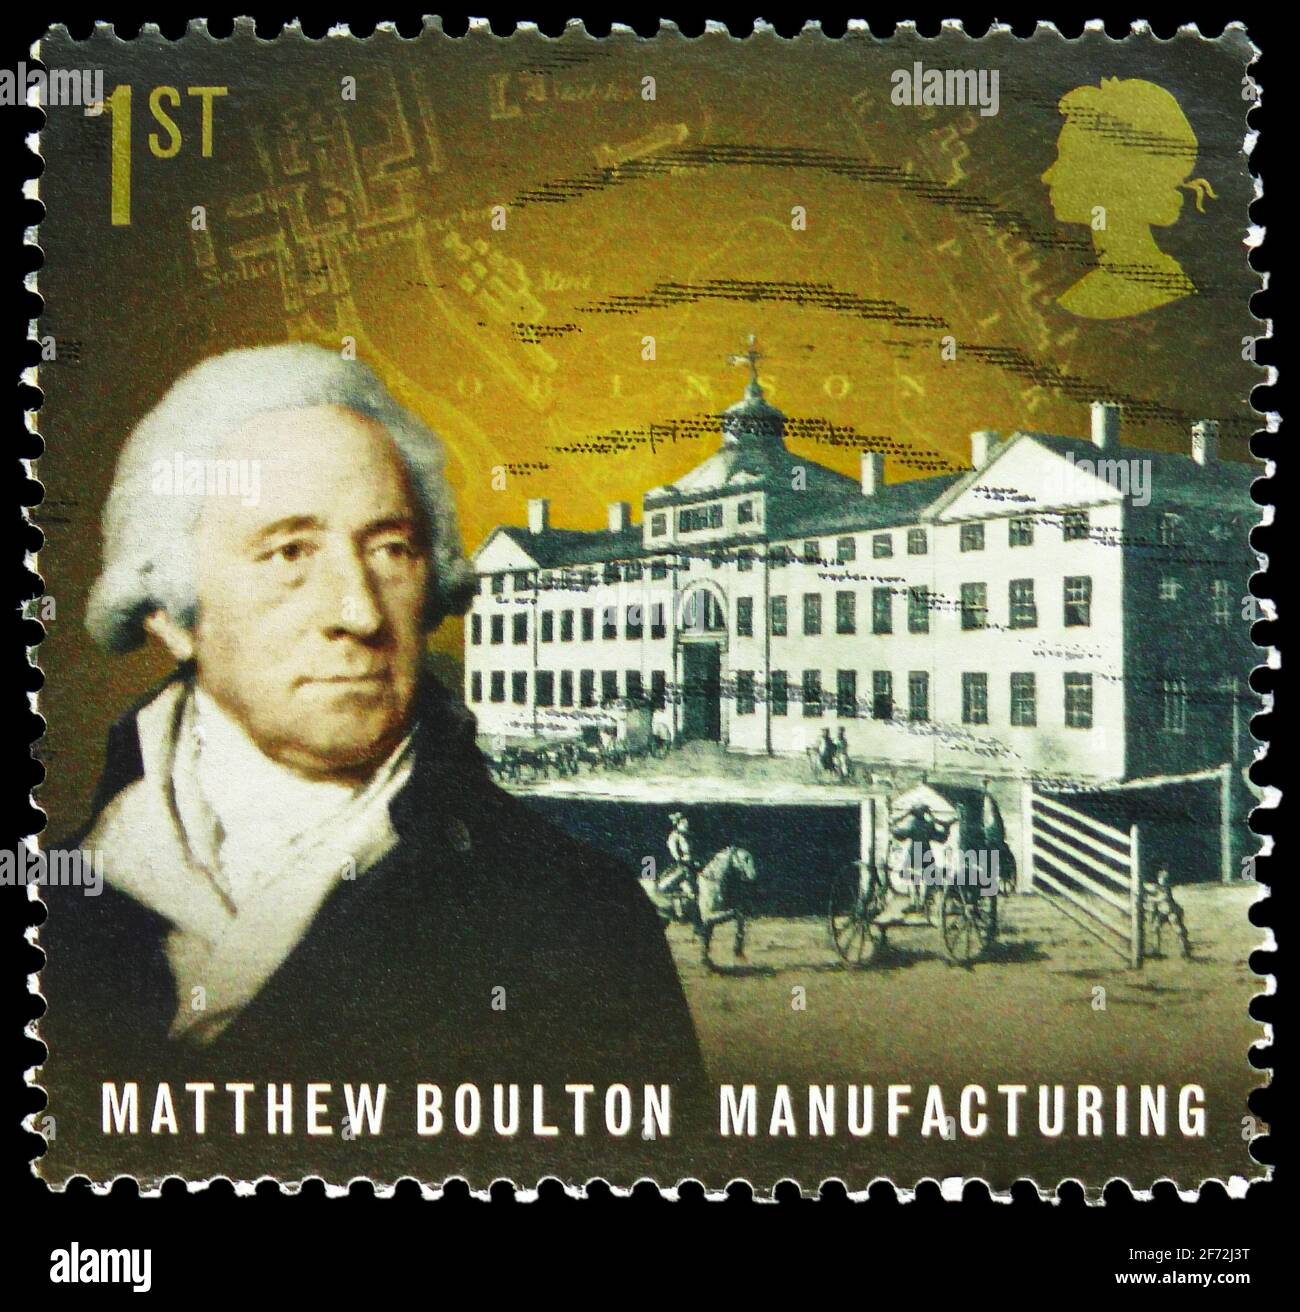 MOSCOU, RUSSIE - 22 DÉCEMBRE 2020: Timbre-poste imprimé au Royaume-Uni montre Matthew Boulton, fabrication, pionniers de l'industriel Revolutio Banque D'Images